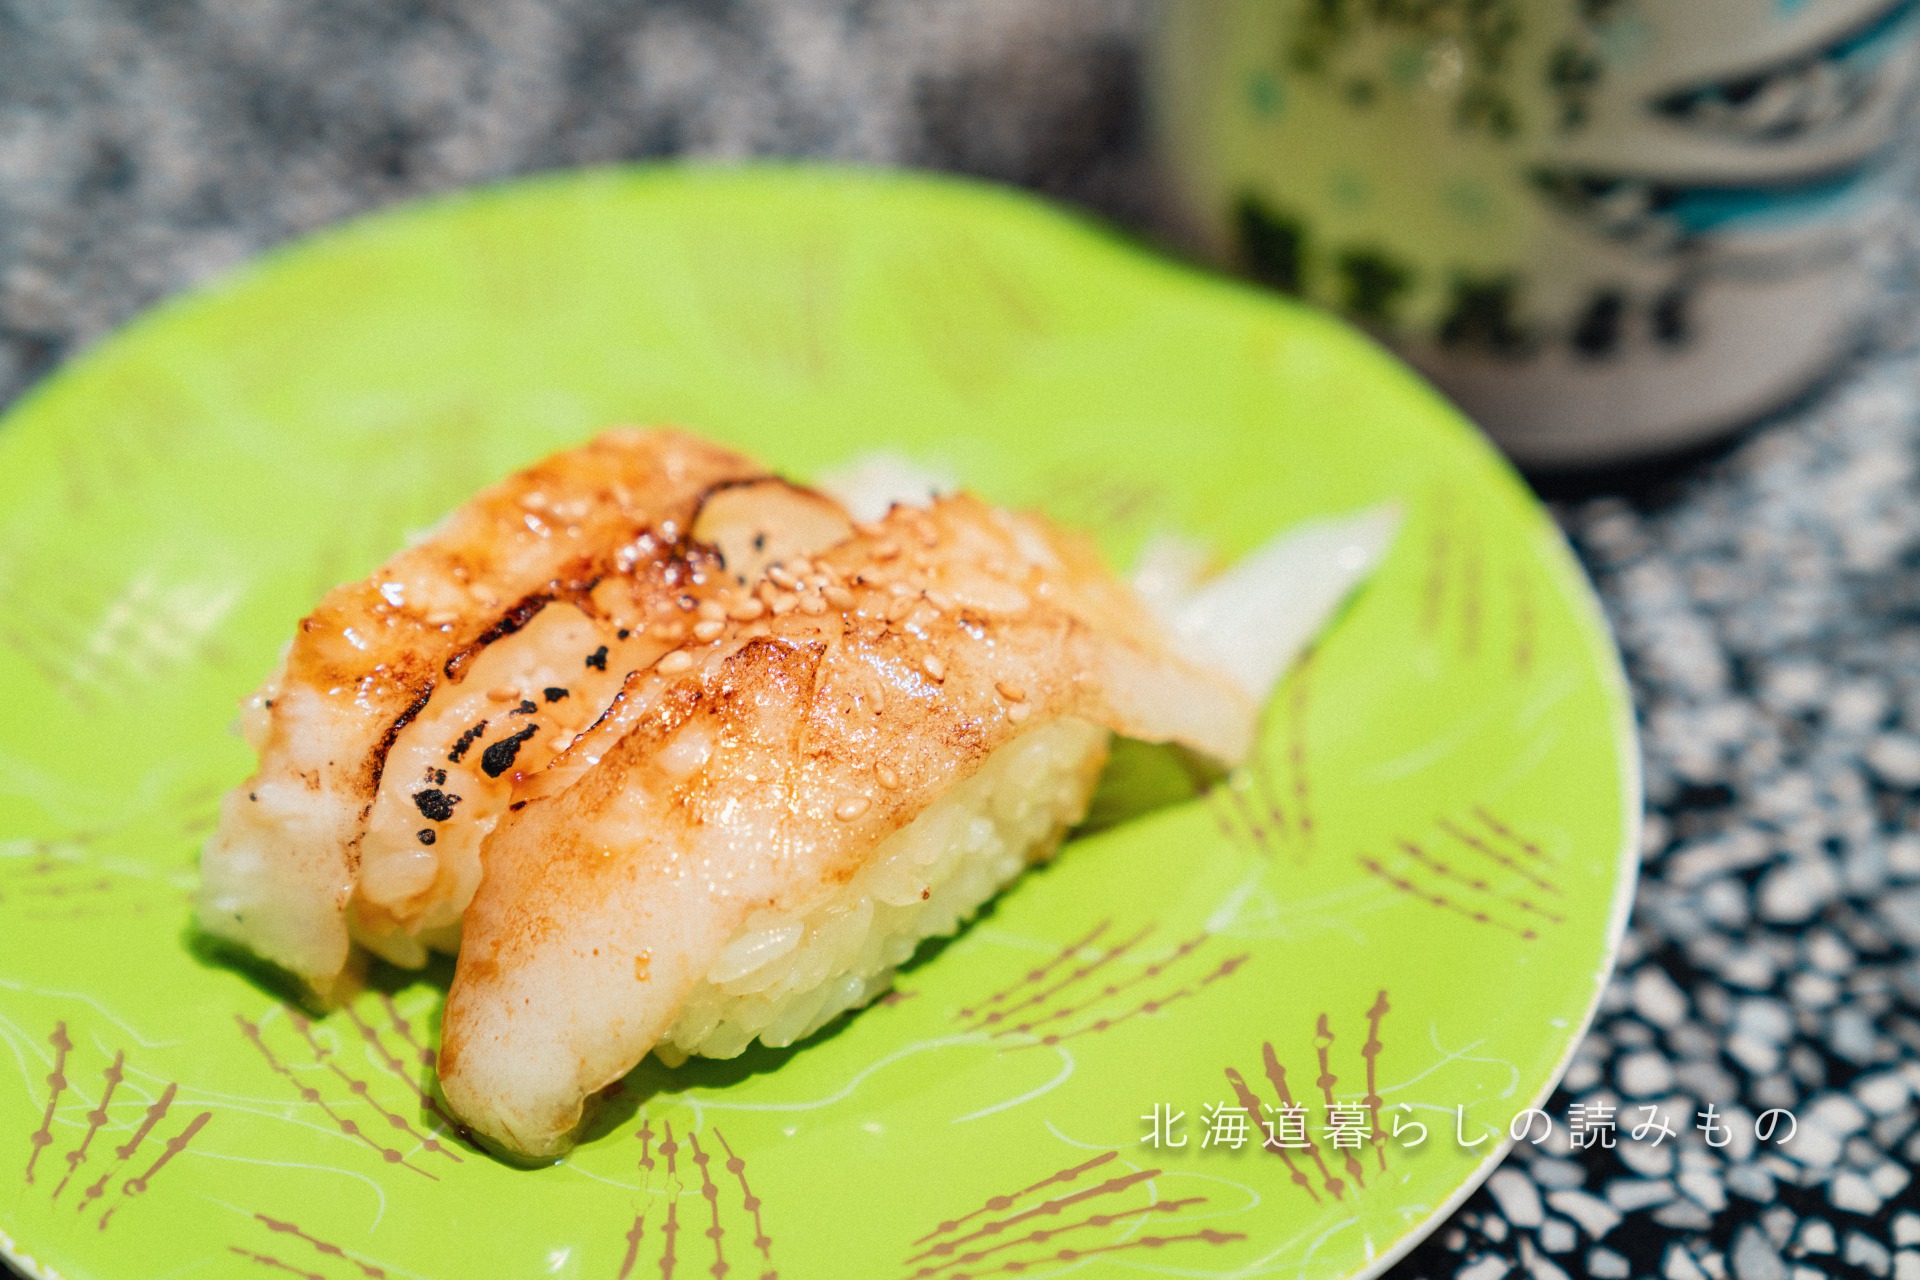 回転寿司 根室花まるのメニュー「炙りえんがわ 焦し醤油握り」の写真